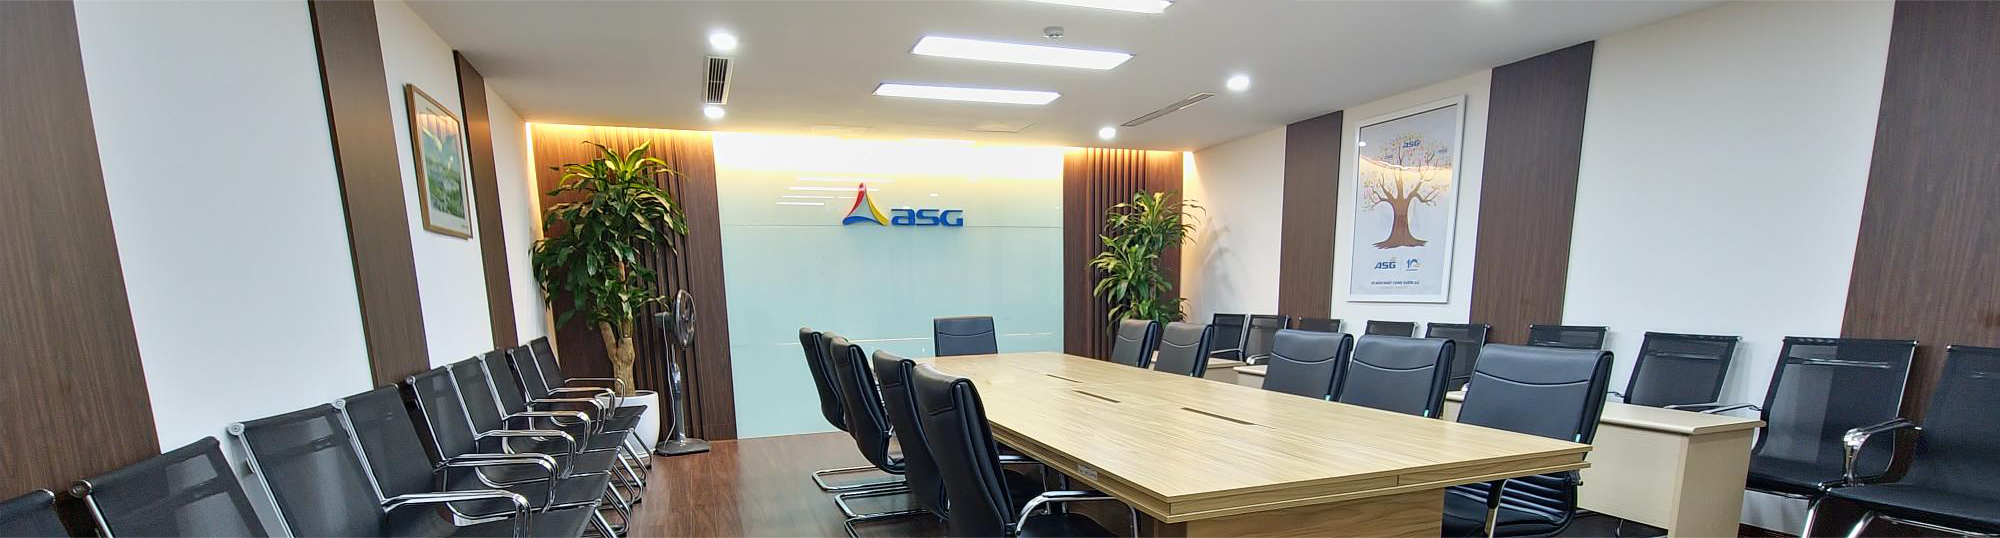 Công bố thông tin kết quả giao dịch cổ phiếu ASG của người có liên quan đến người nội bộ